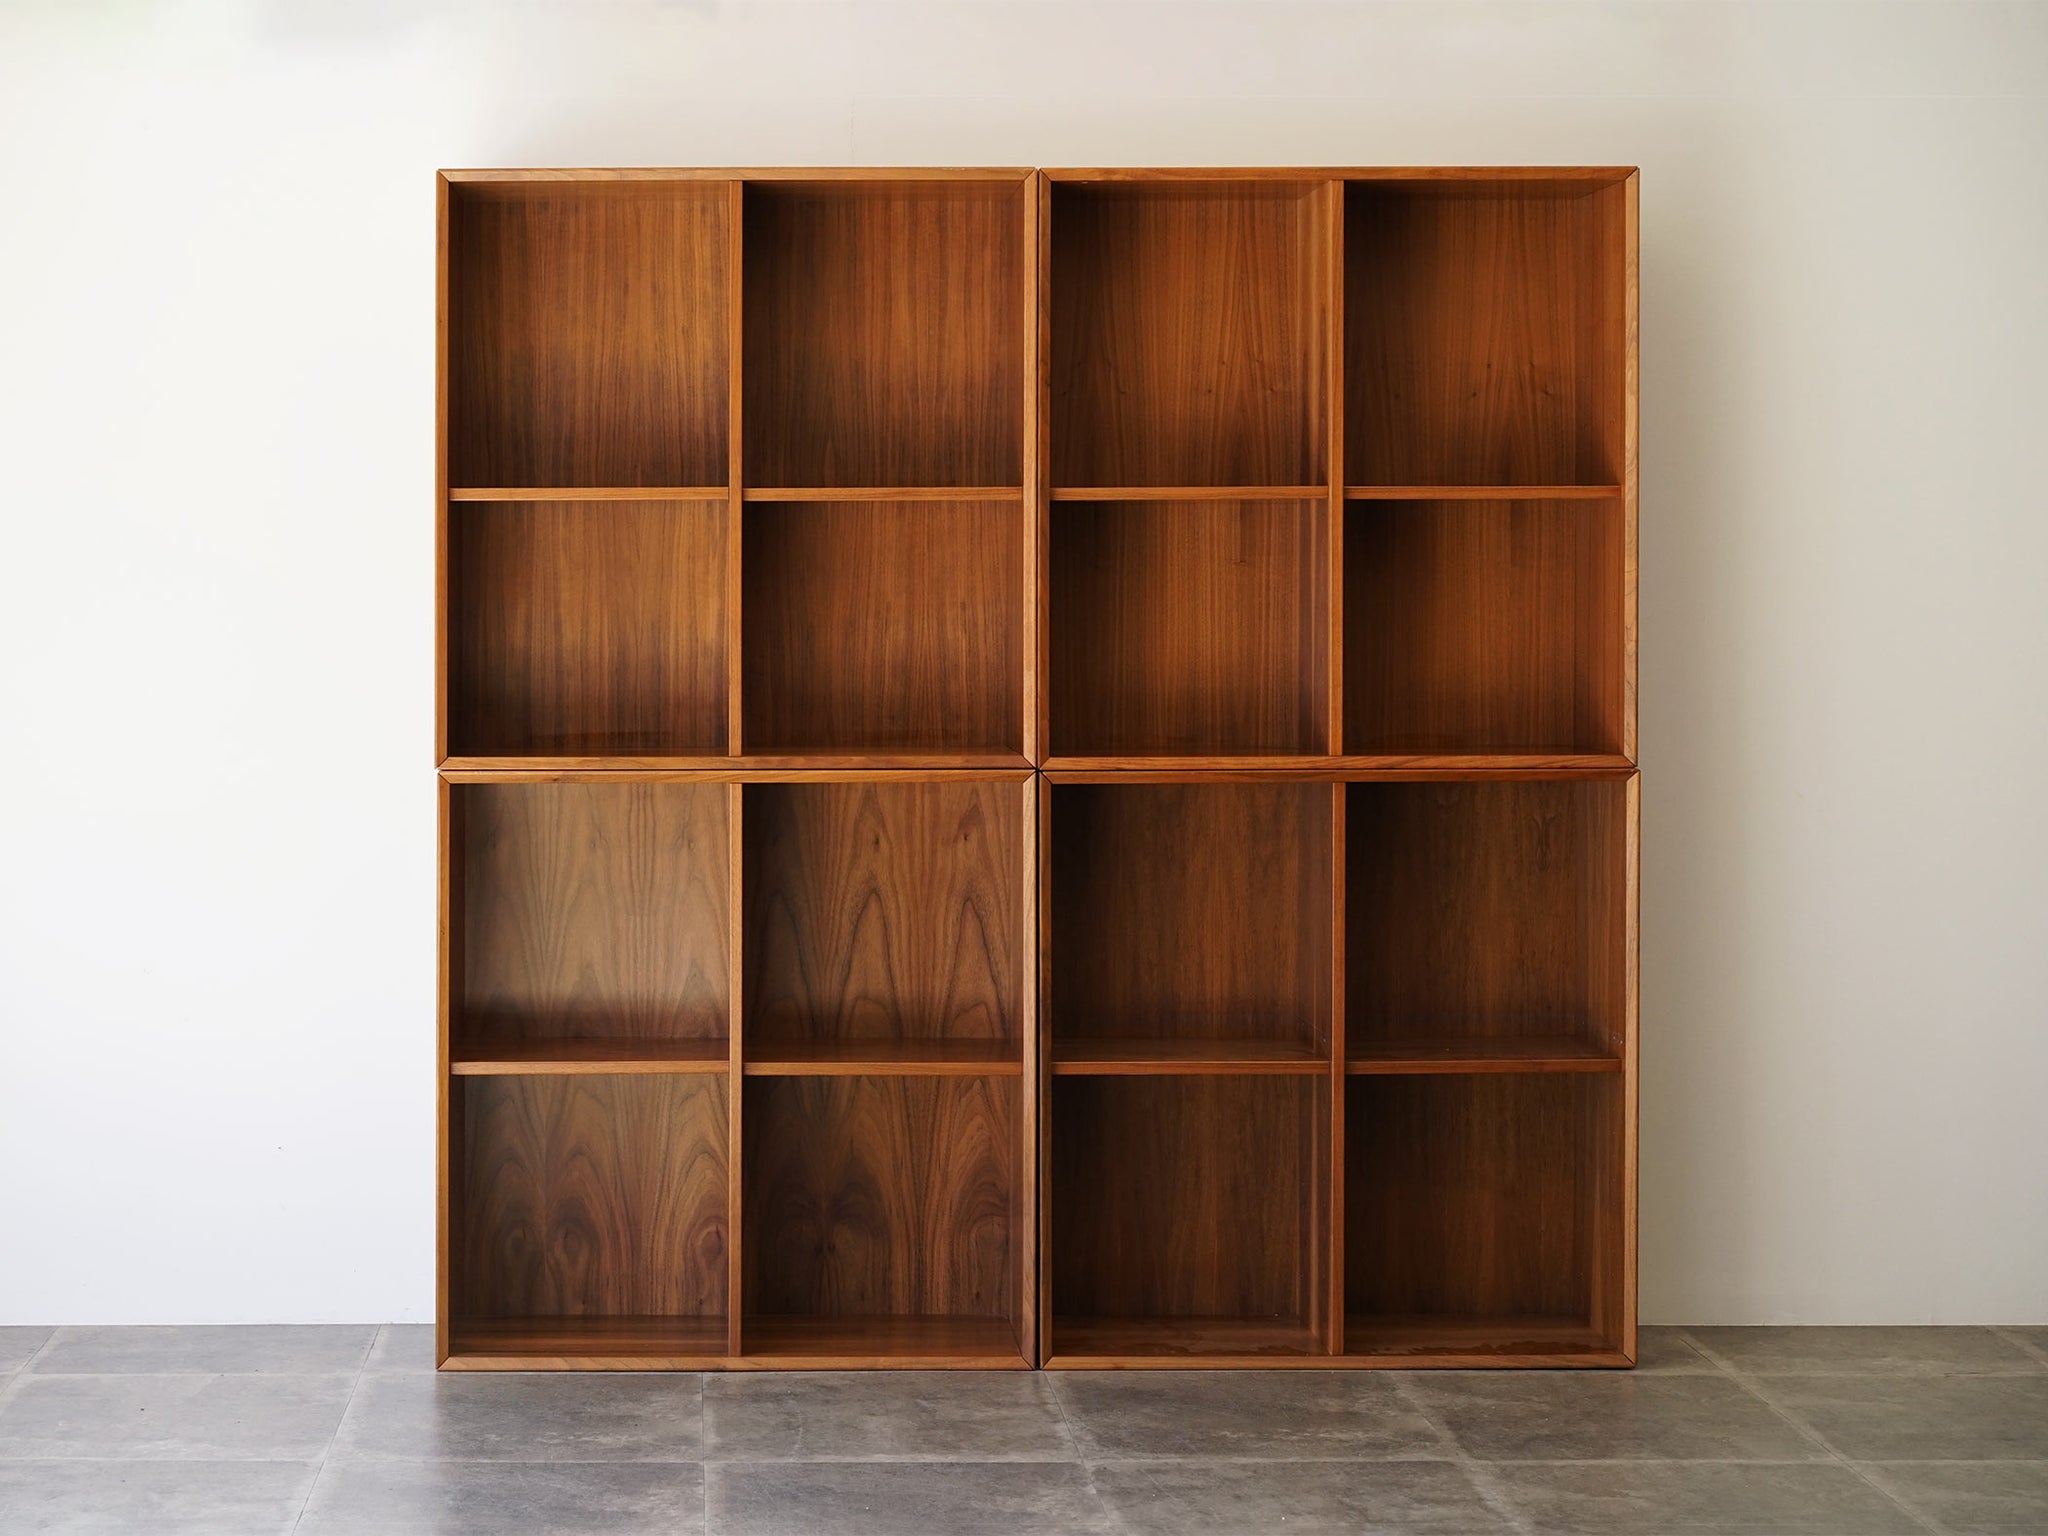 デンマークデザイン 本棚 ブックケース北欧 縦横80cmの本棚4点セット